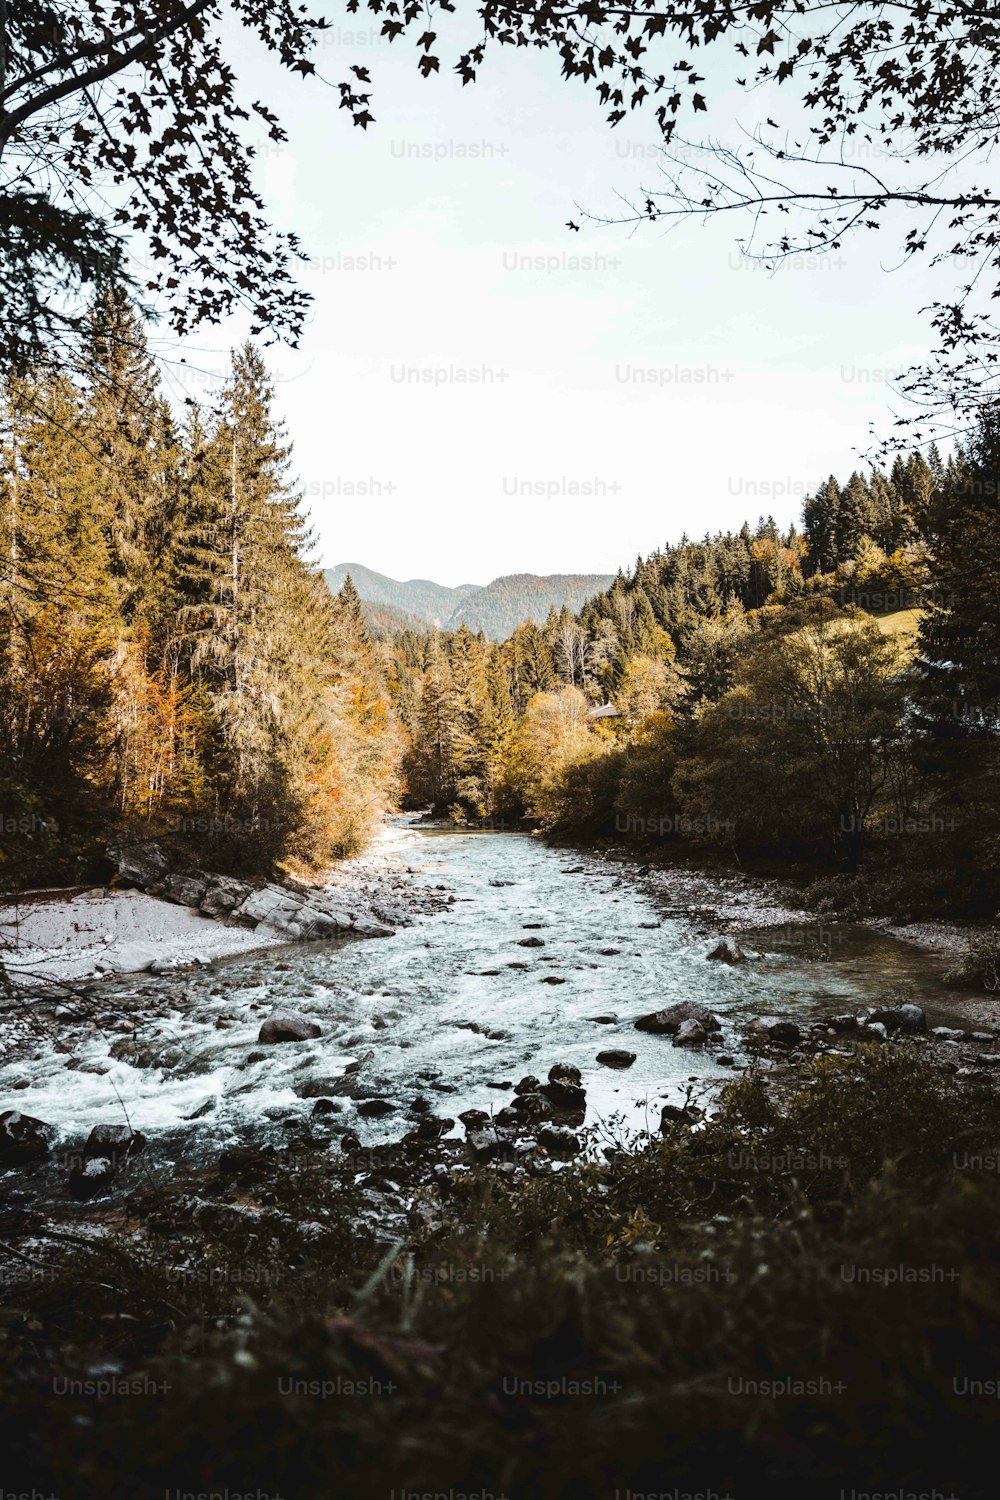 Un fiume che attraversa una foresta piena di alberi